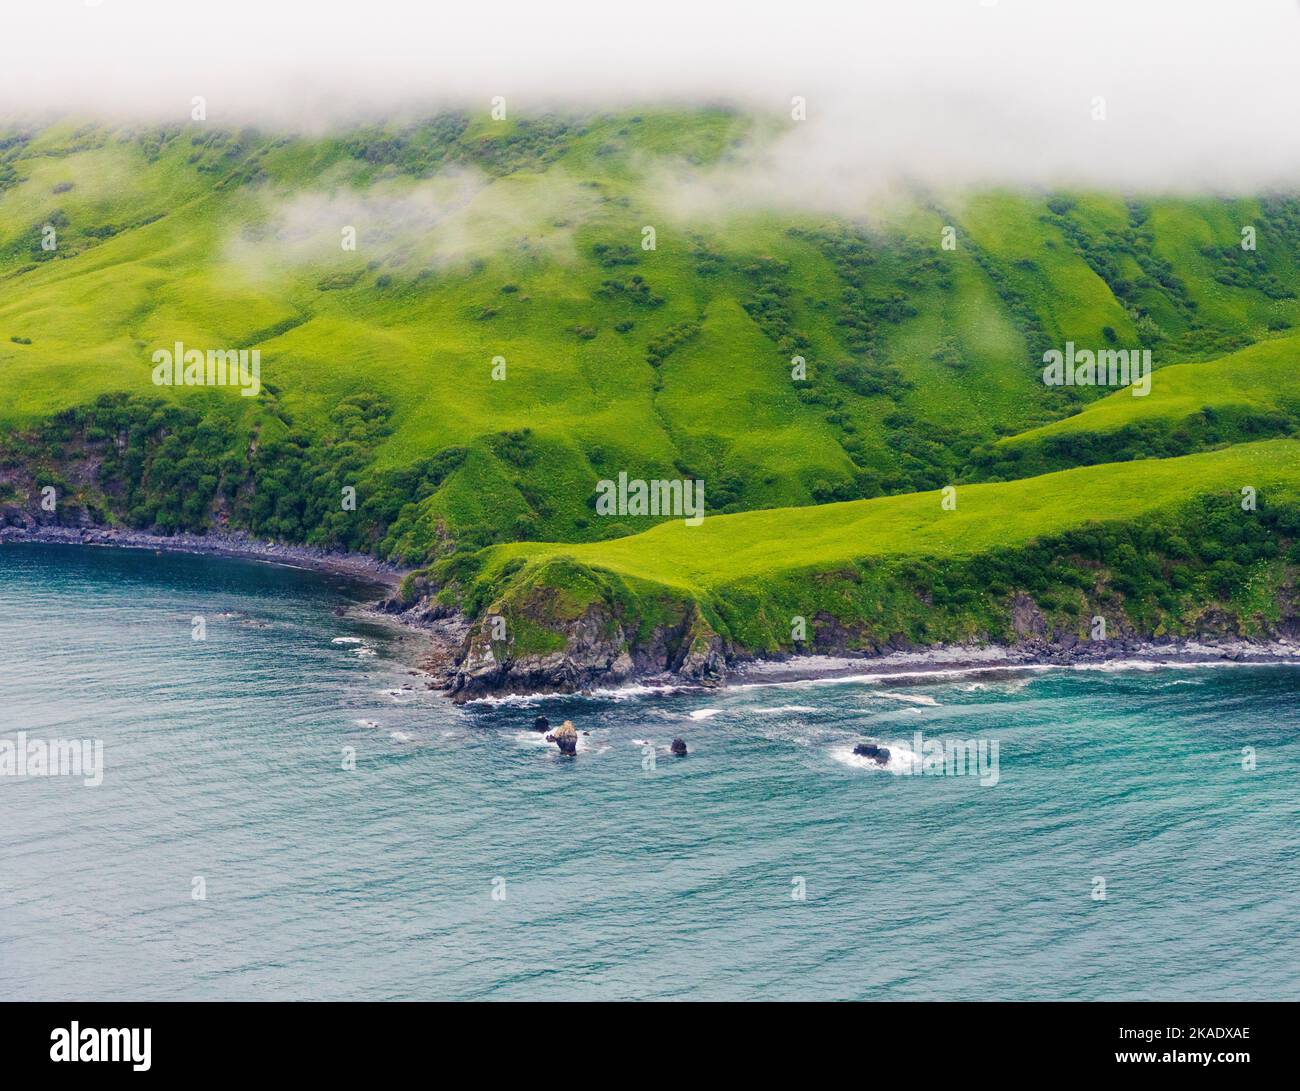 Luftaufnahme der abgelegenen Kodiak Island; de Havilland; Beaver; Wasserflugzeug; Alaska; USA Stockfoto